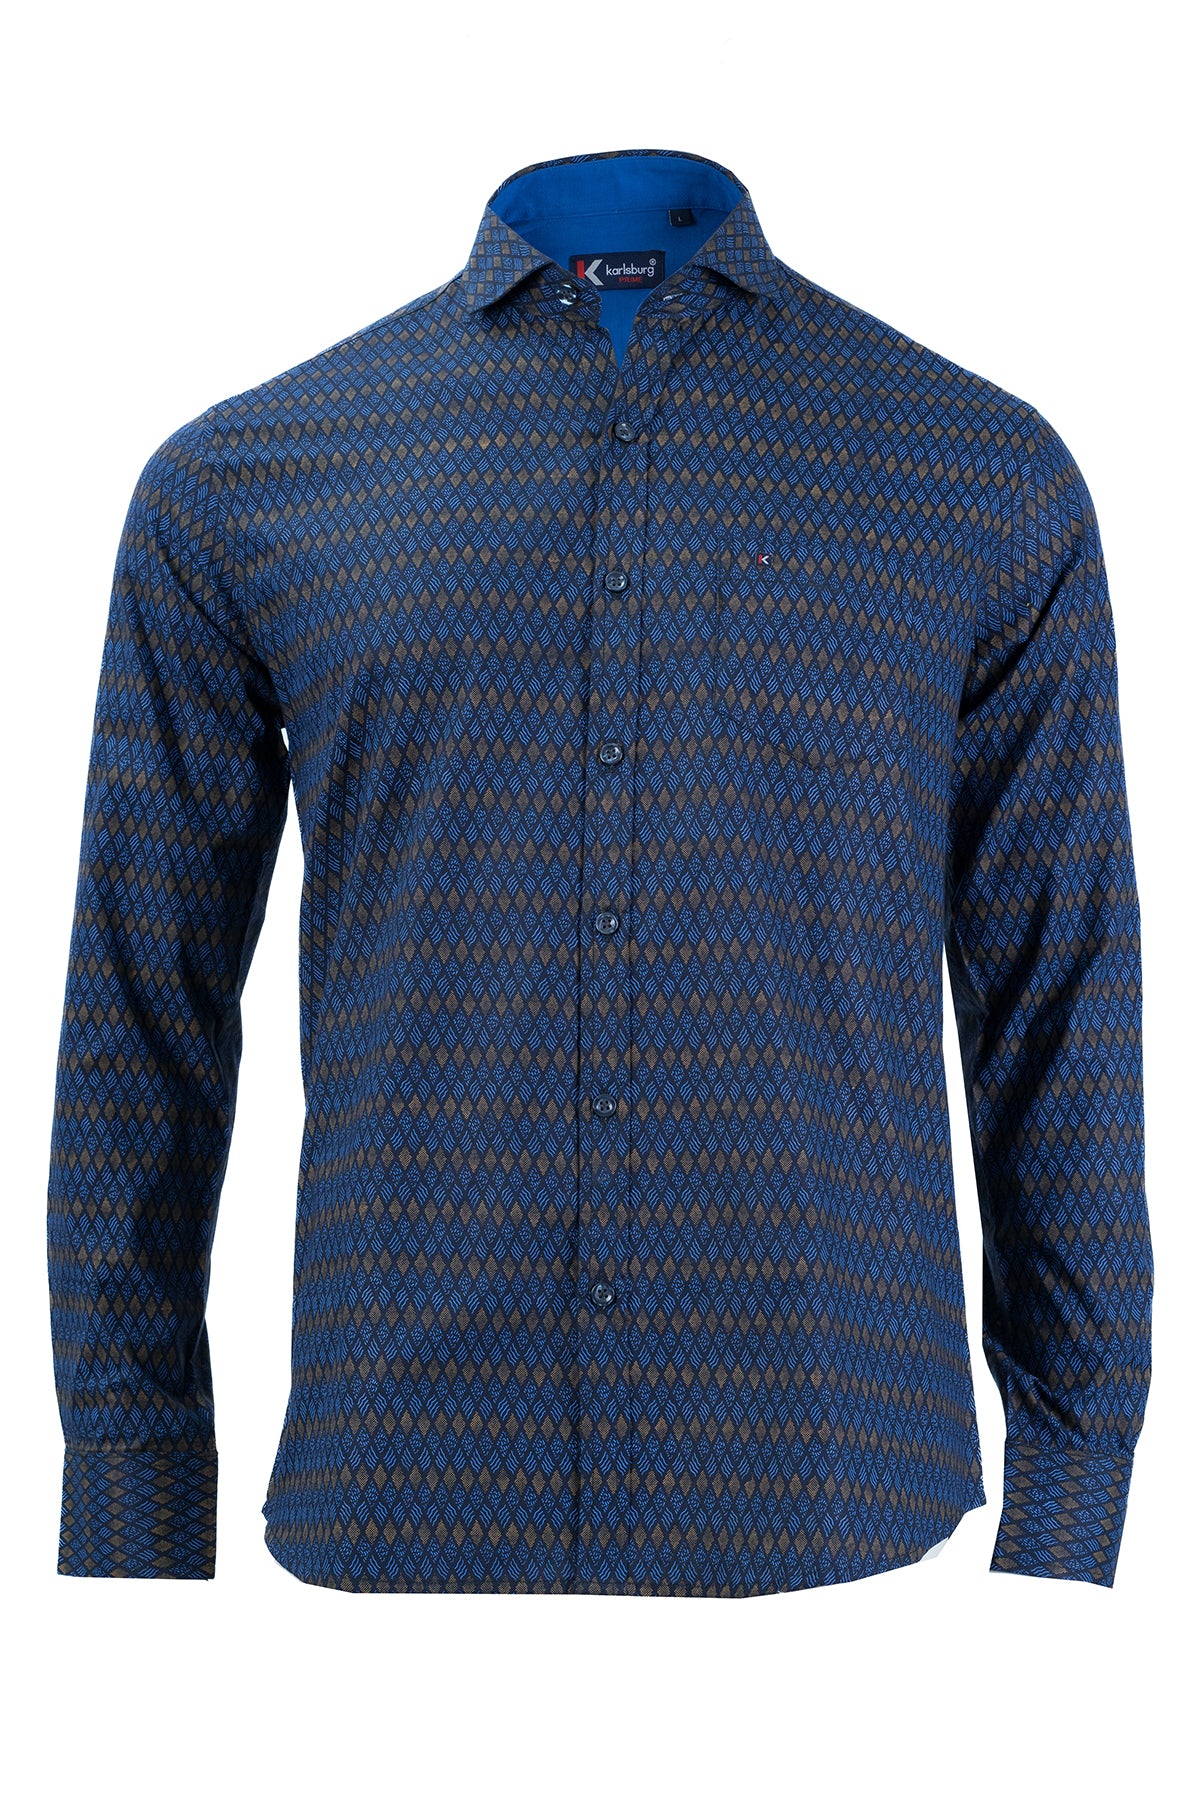 Men's Blue Printed Slim Fit Shirt